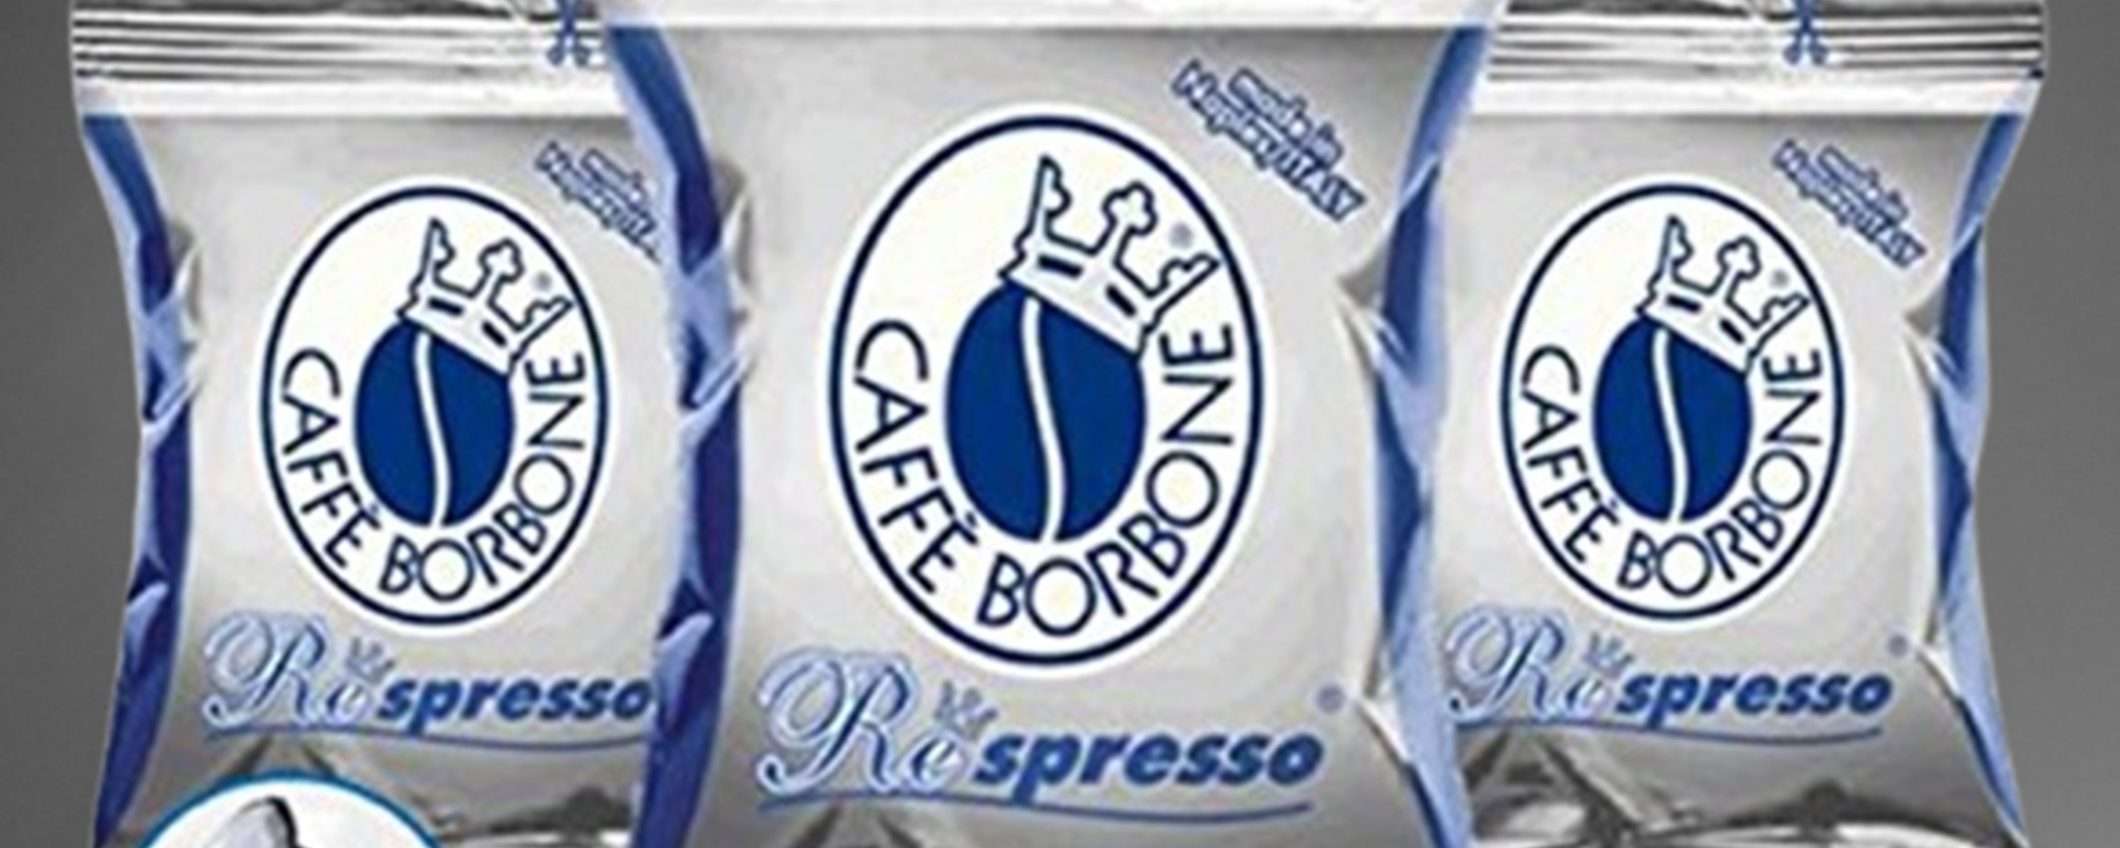 400 capsule caffè Borbone Respresso miscela Blu per Nespresso a soli 66€: DOPPIO SCONTO di eBay